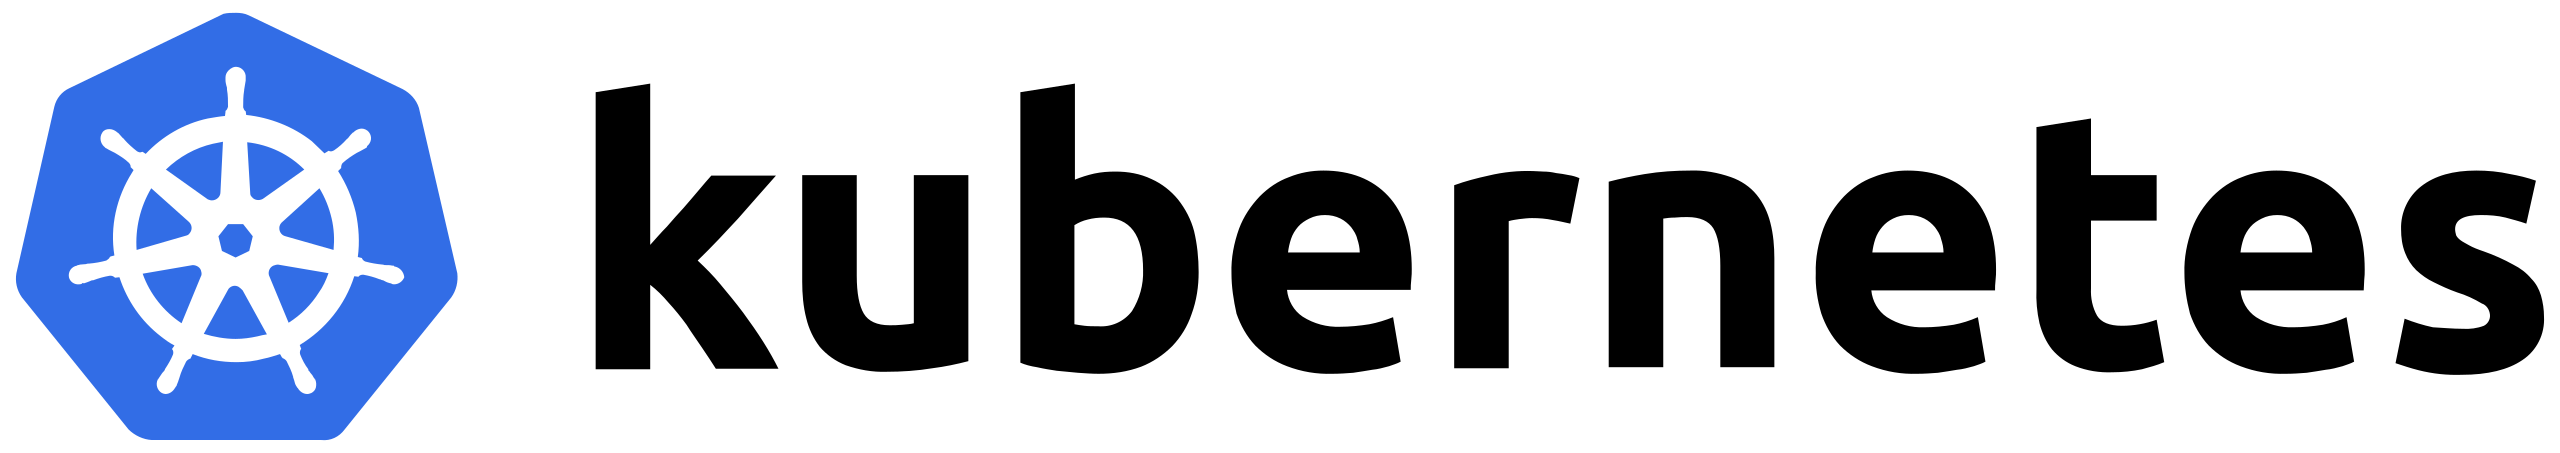 2560px-Kubernetes_logo.svg